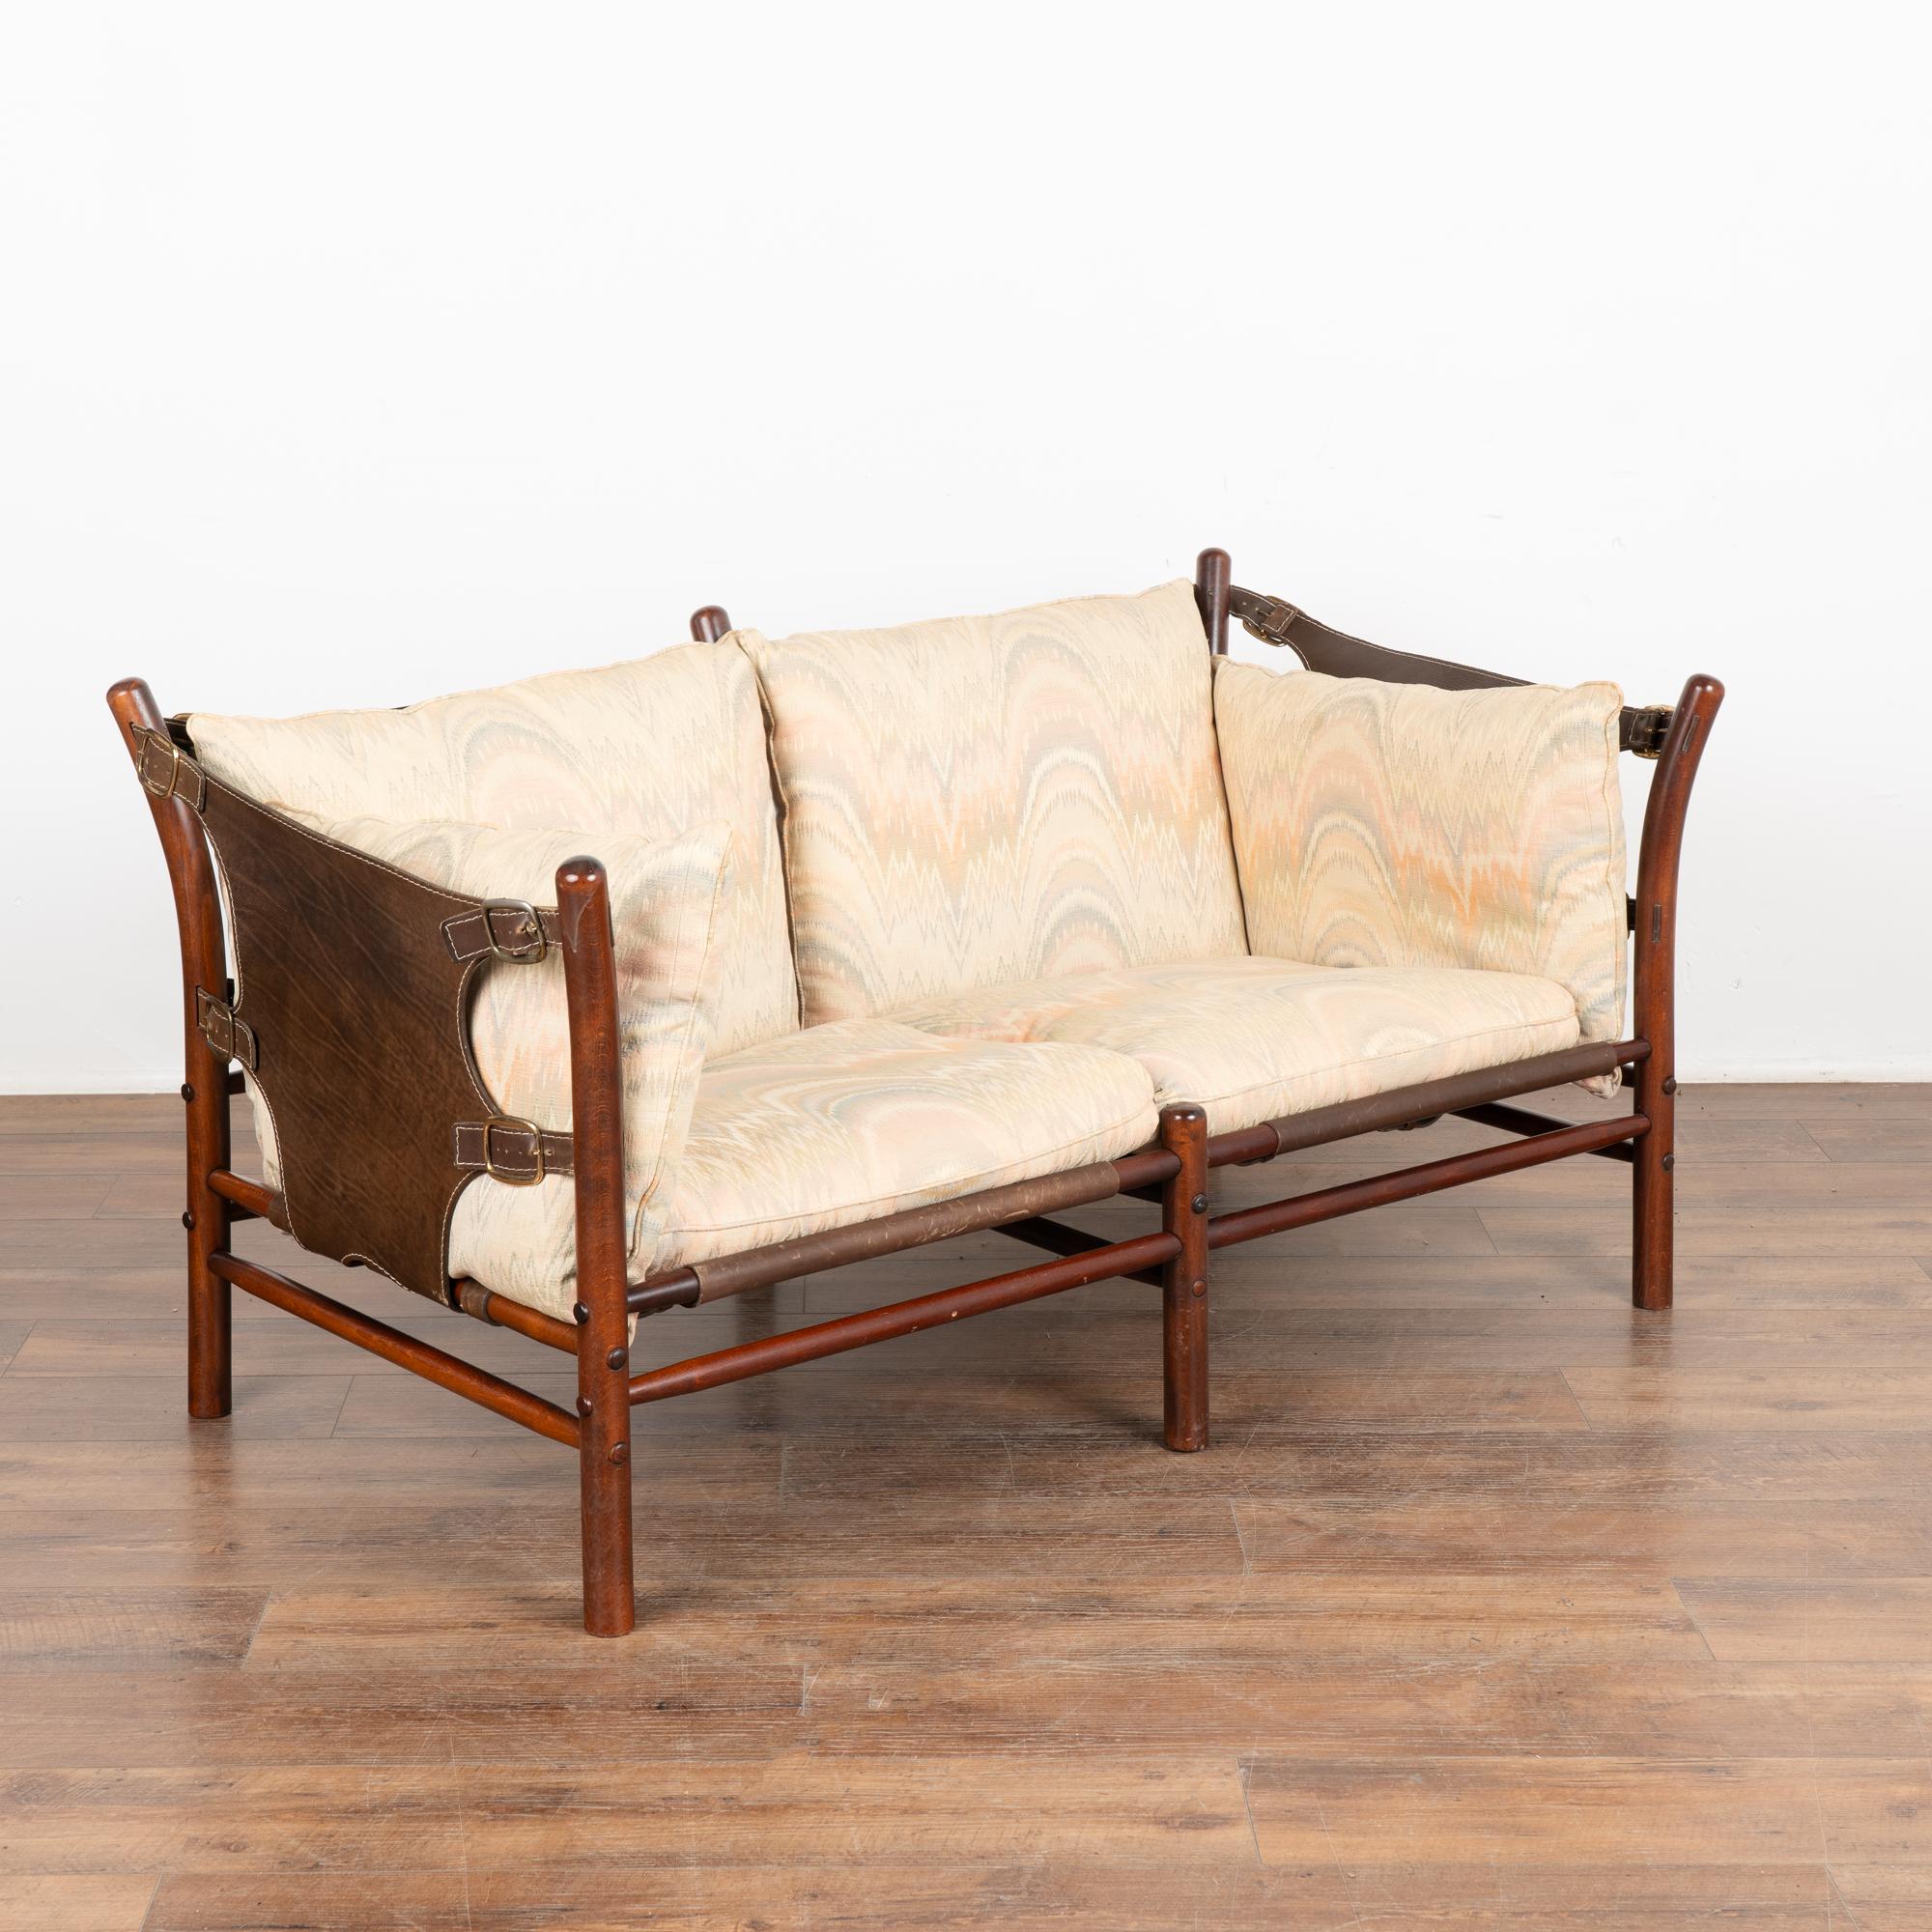 Modernes Zwei-Personen-Sofa aus der Jahrhundertmitte, entworfen von Arne Norell. Seitenteile und Rückenlehne aus Leder, Messingbeschläge, lose Kissen mit Reißverschlussabdeckung. Das Modell Ilona wurde von Safarimöbeln inspiriert und von Aneby